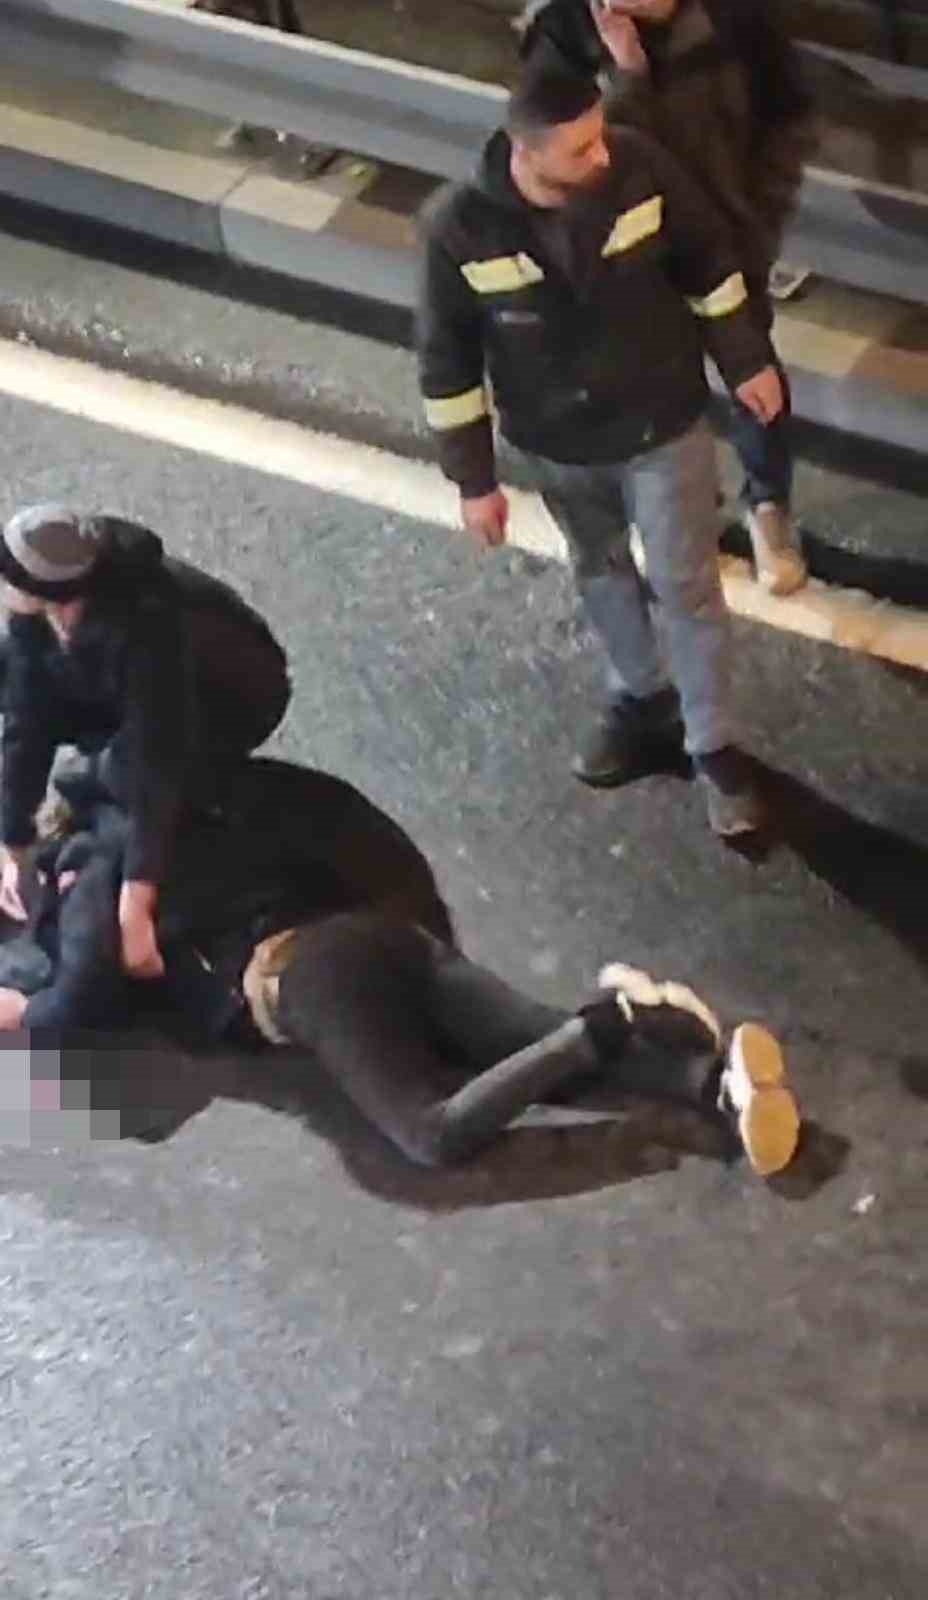 İstanbul’da dehşet anları kamerada: Annesiyle tartışıp yola atladı, kadın sinir krizi geçirdi
